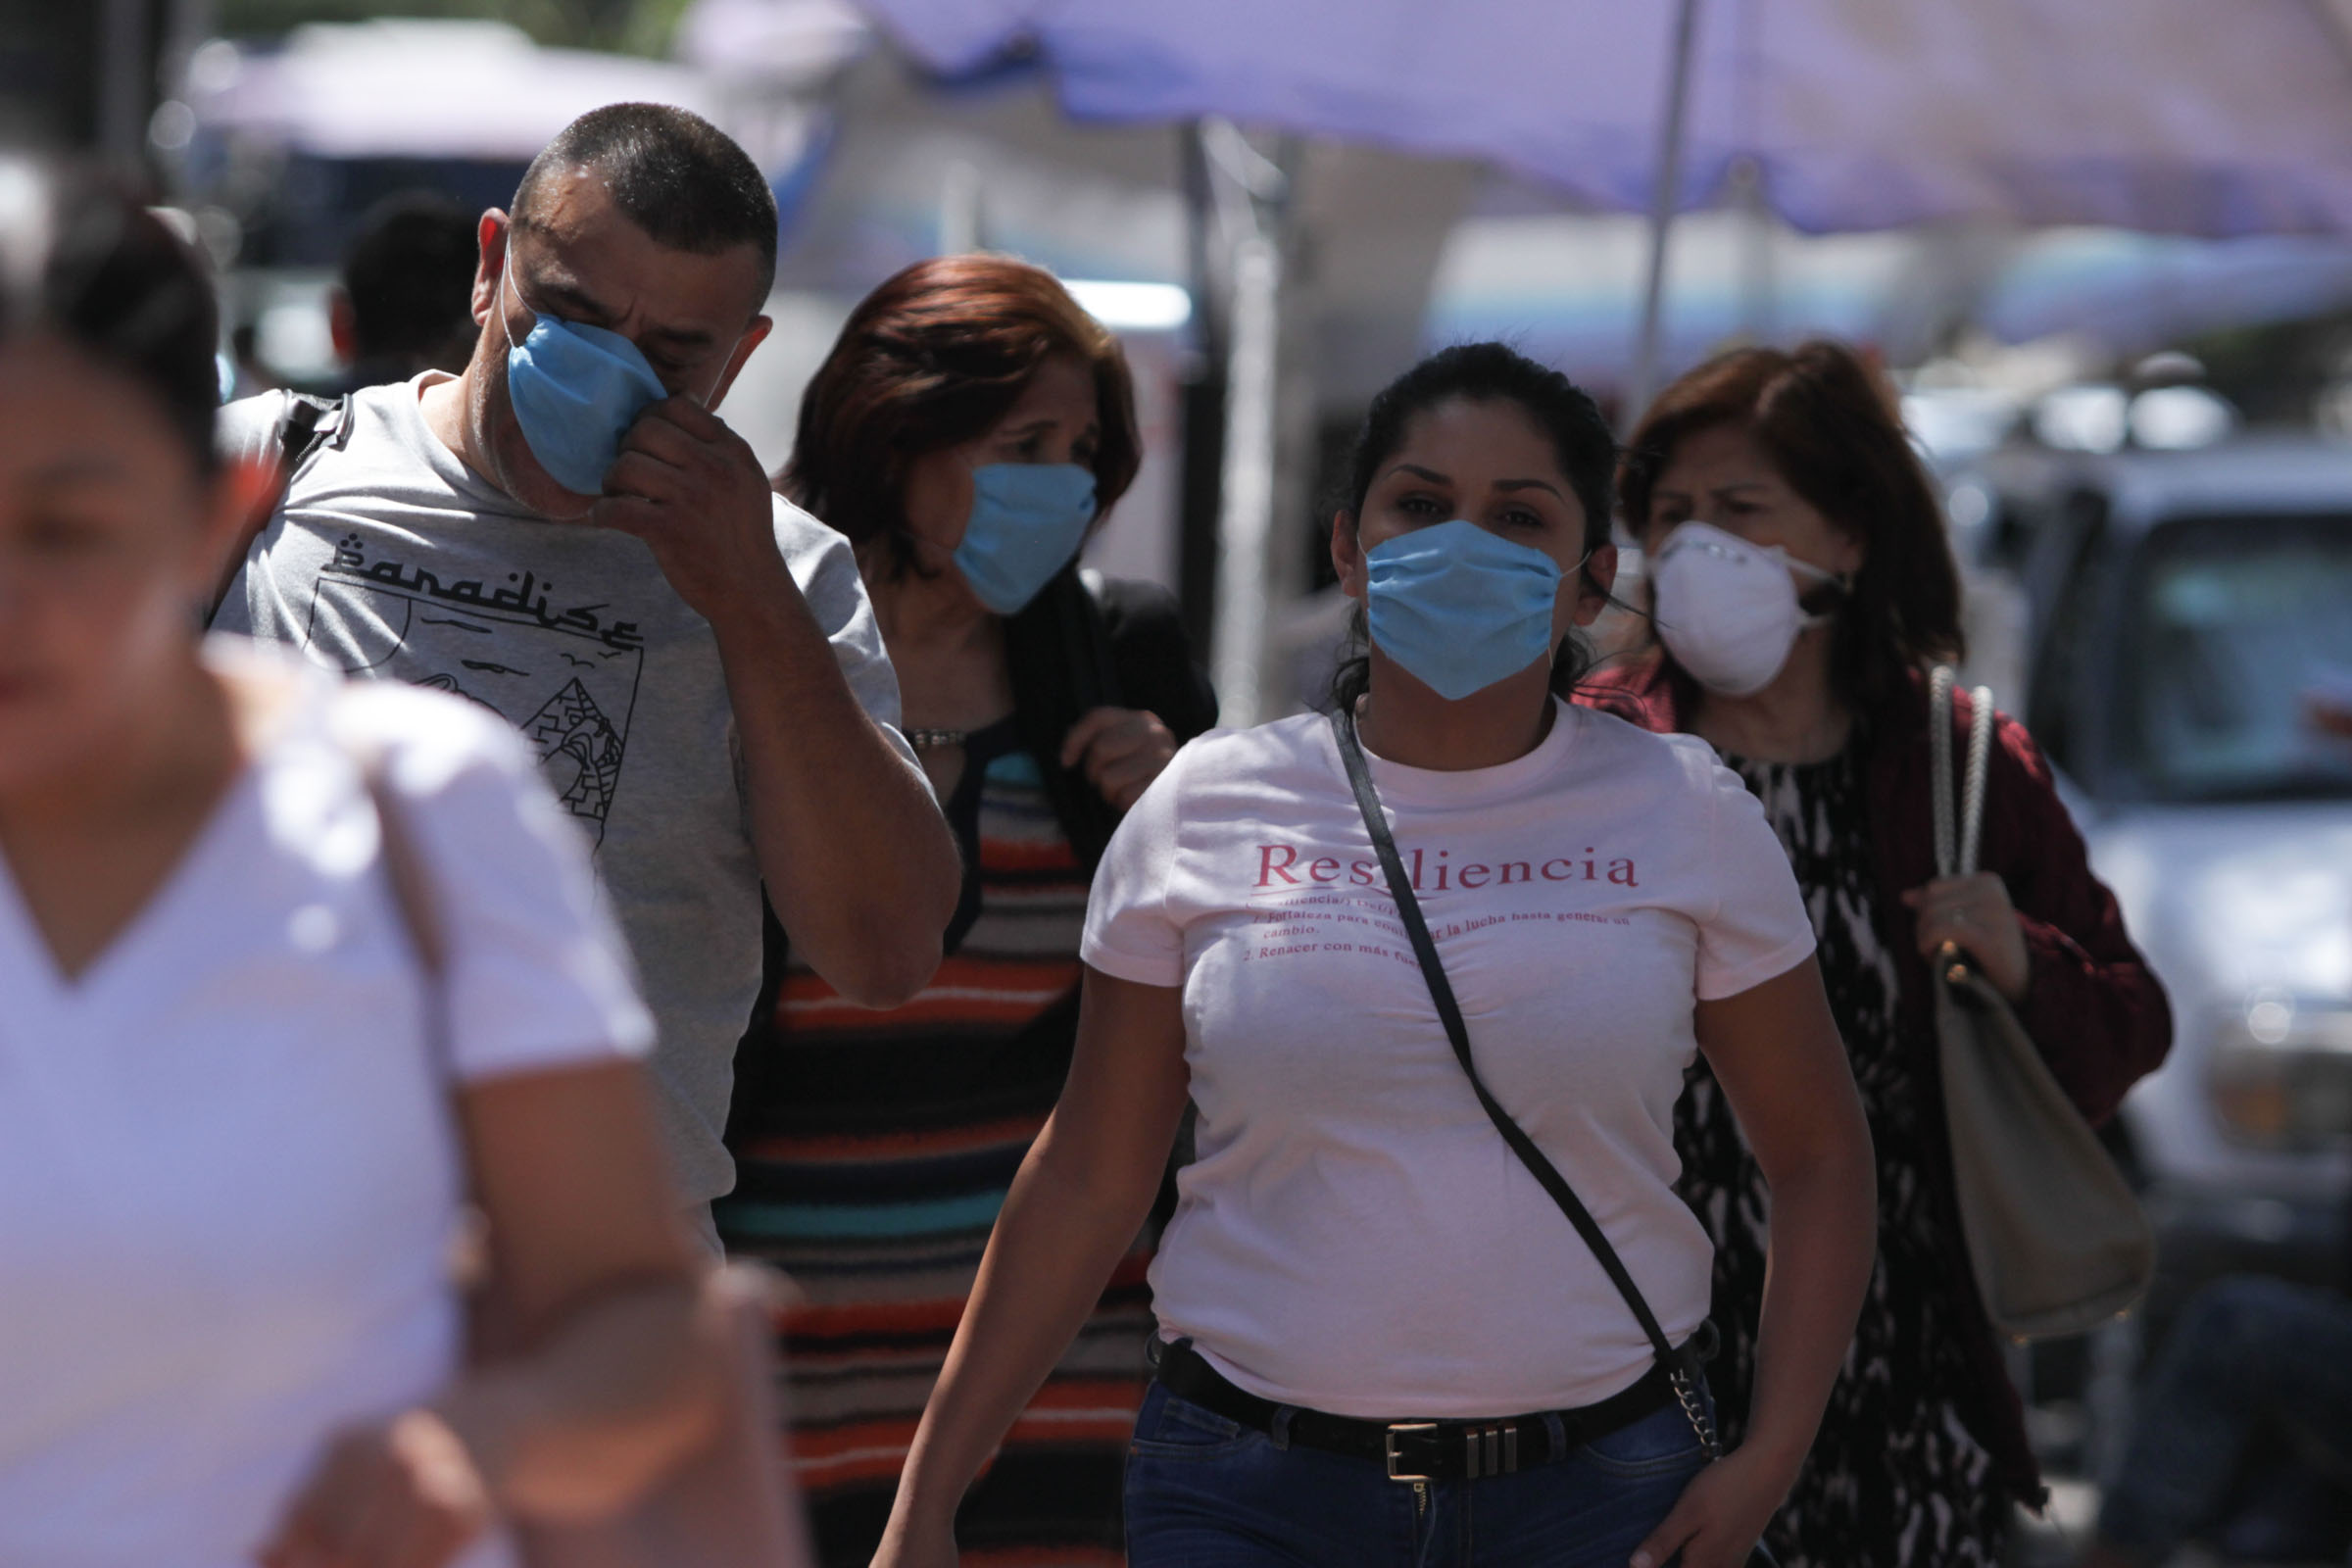 200304094. Cuidad de México, 04 Mar 2020 (Notimex- Marco González).- Debido al los recientes casos positivos de coronavirus COVID-19 en la Ciudad de México, personas acuden al Instituto de Nacional de Enfermedades Respiratorias (INER), a recibir consulta y como medida preventiva usan cubrebocas para evitar posibles contagios. Ciudad de México, 04 de marzo de 2020. NOTIMEX/FOTO/MARCO GONZÁLEZ/MGR/HTH